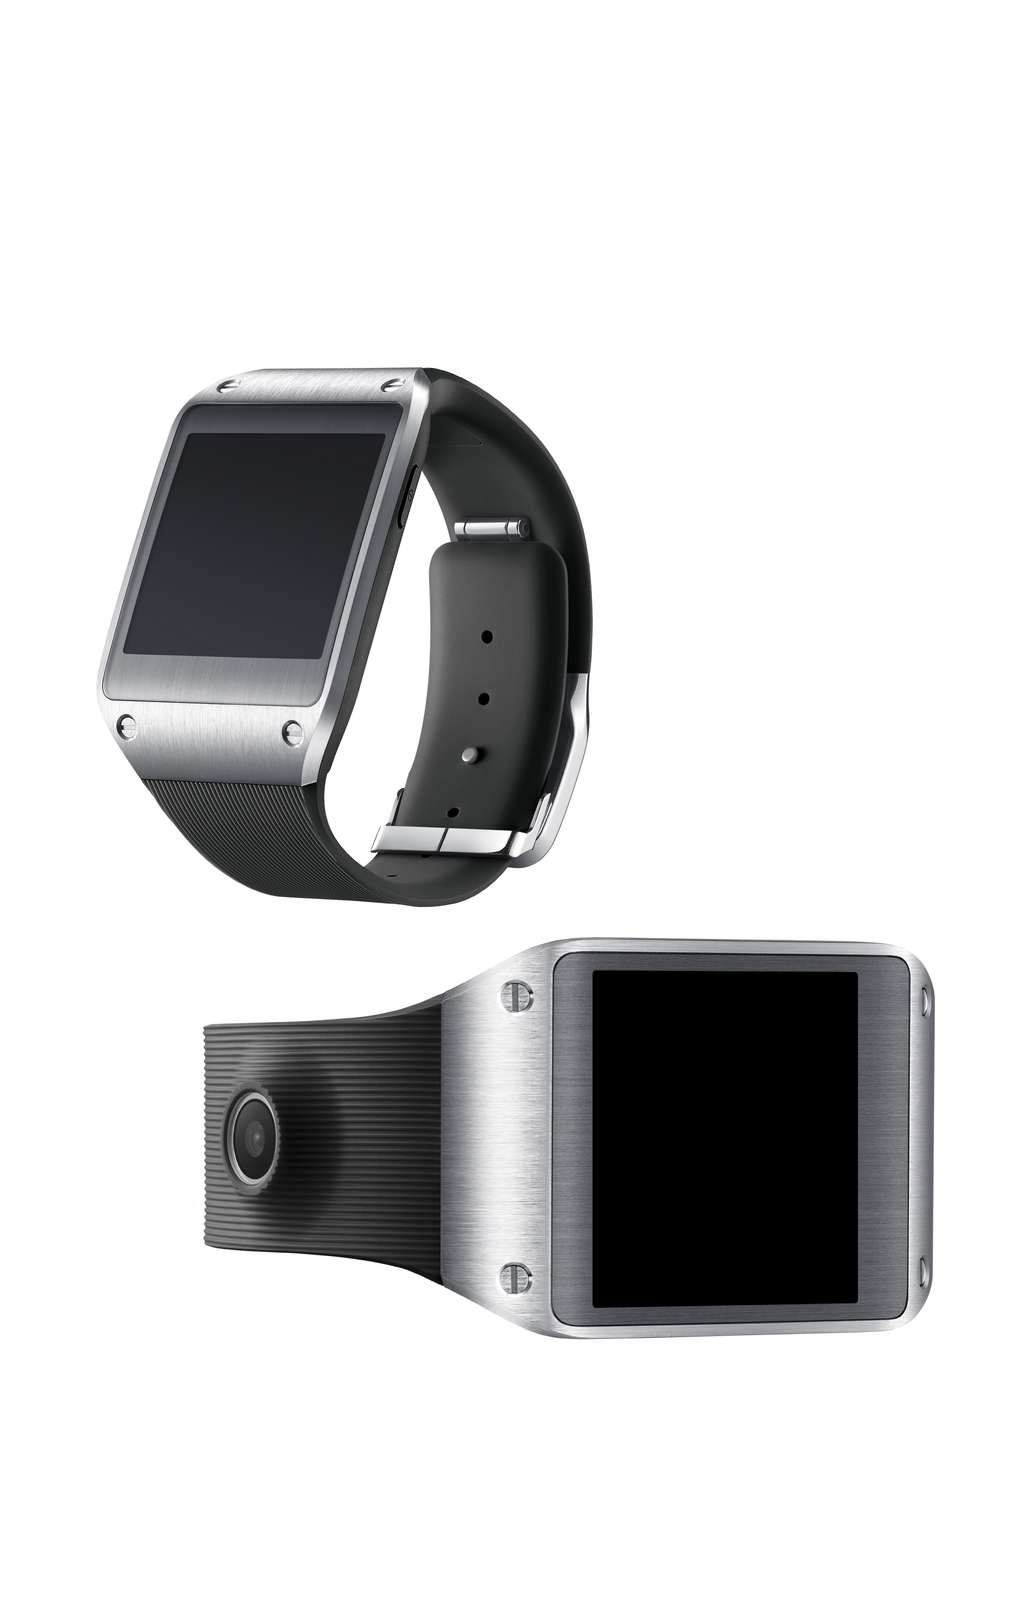 Dans un brevet déposé en Corée du Sud, Samsung a protégé le design d’une montre équipée d’un écran flexible qui s’enroule autour du poignet. Sa première génération de montre intelligente serait cependant équipée d’un écran tactile rigide de 2,5 pouces. © Samsung, Moveplayer